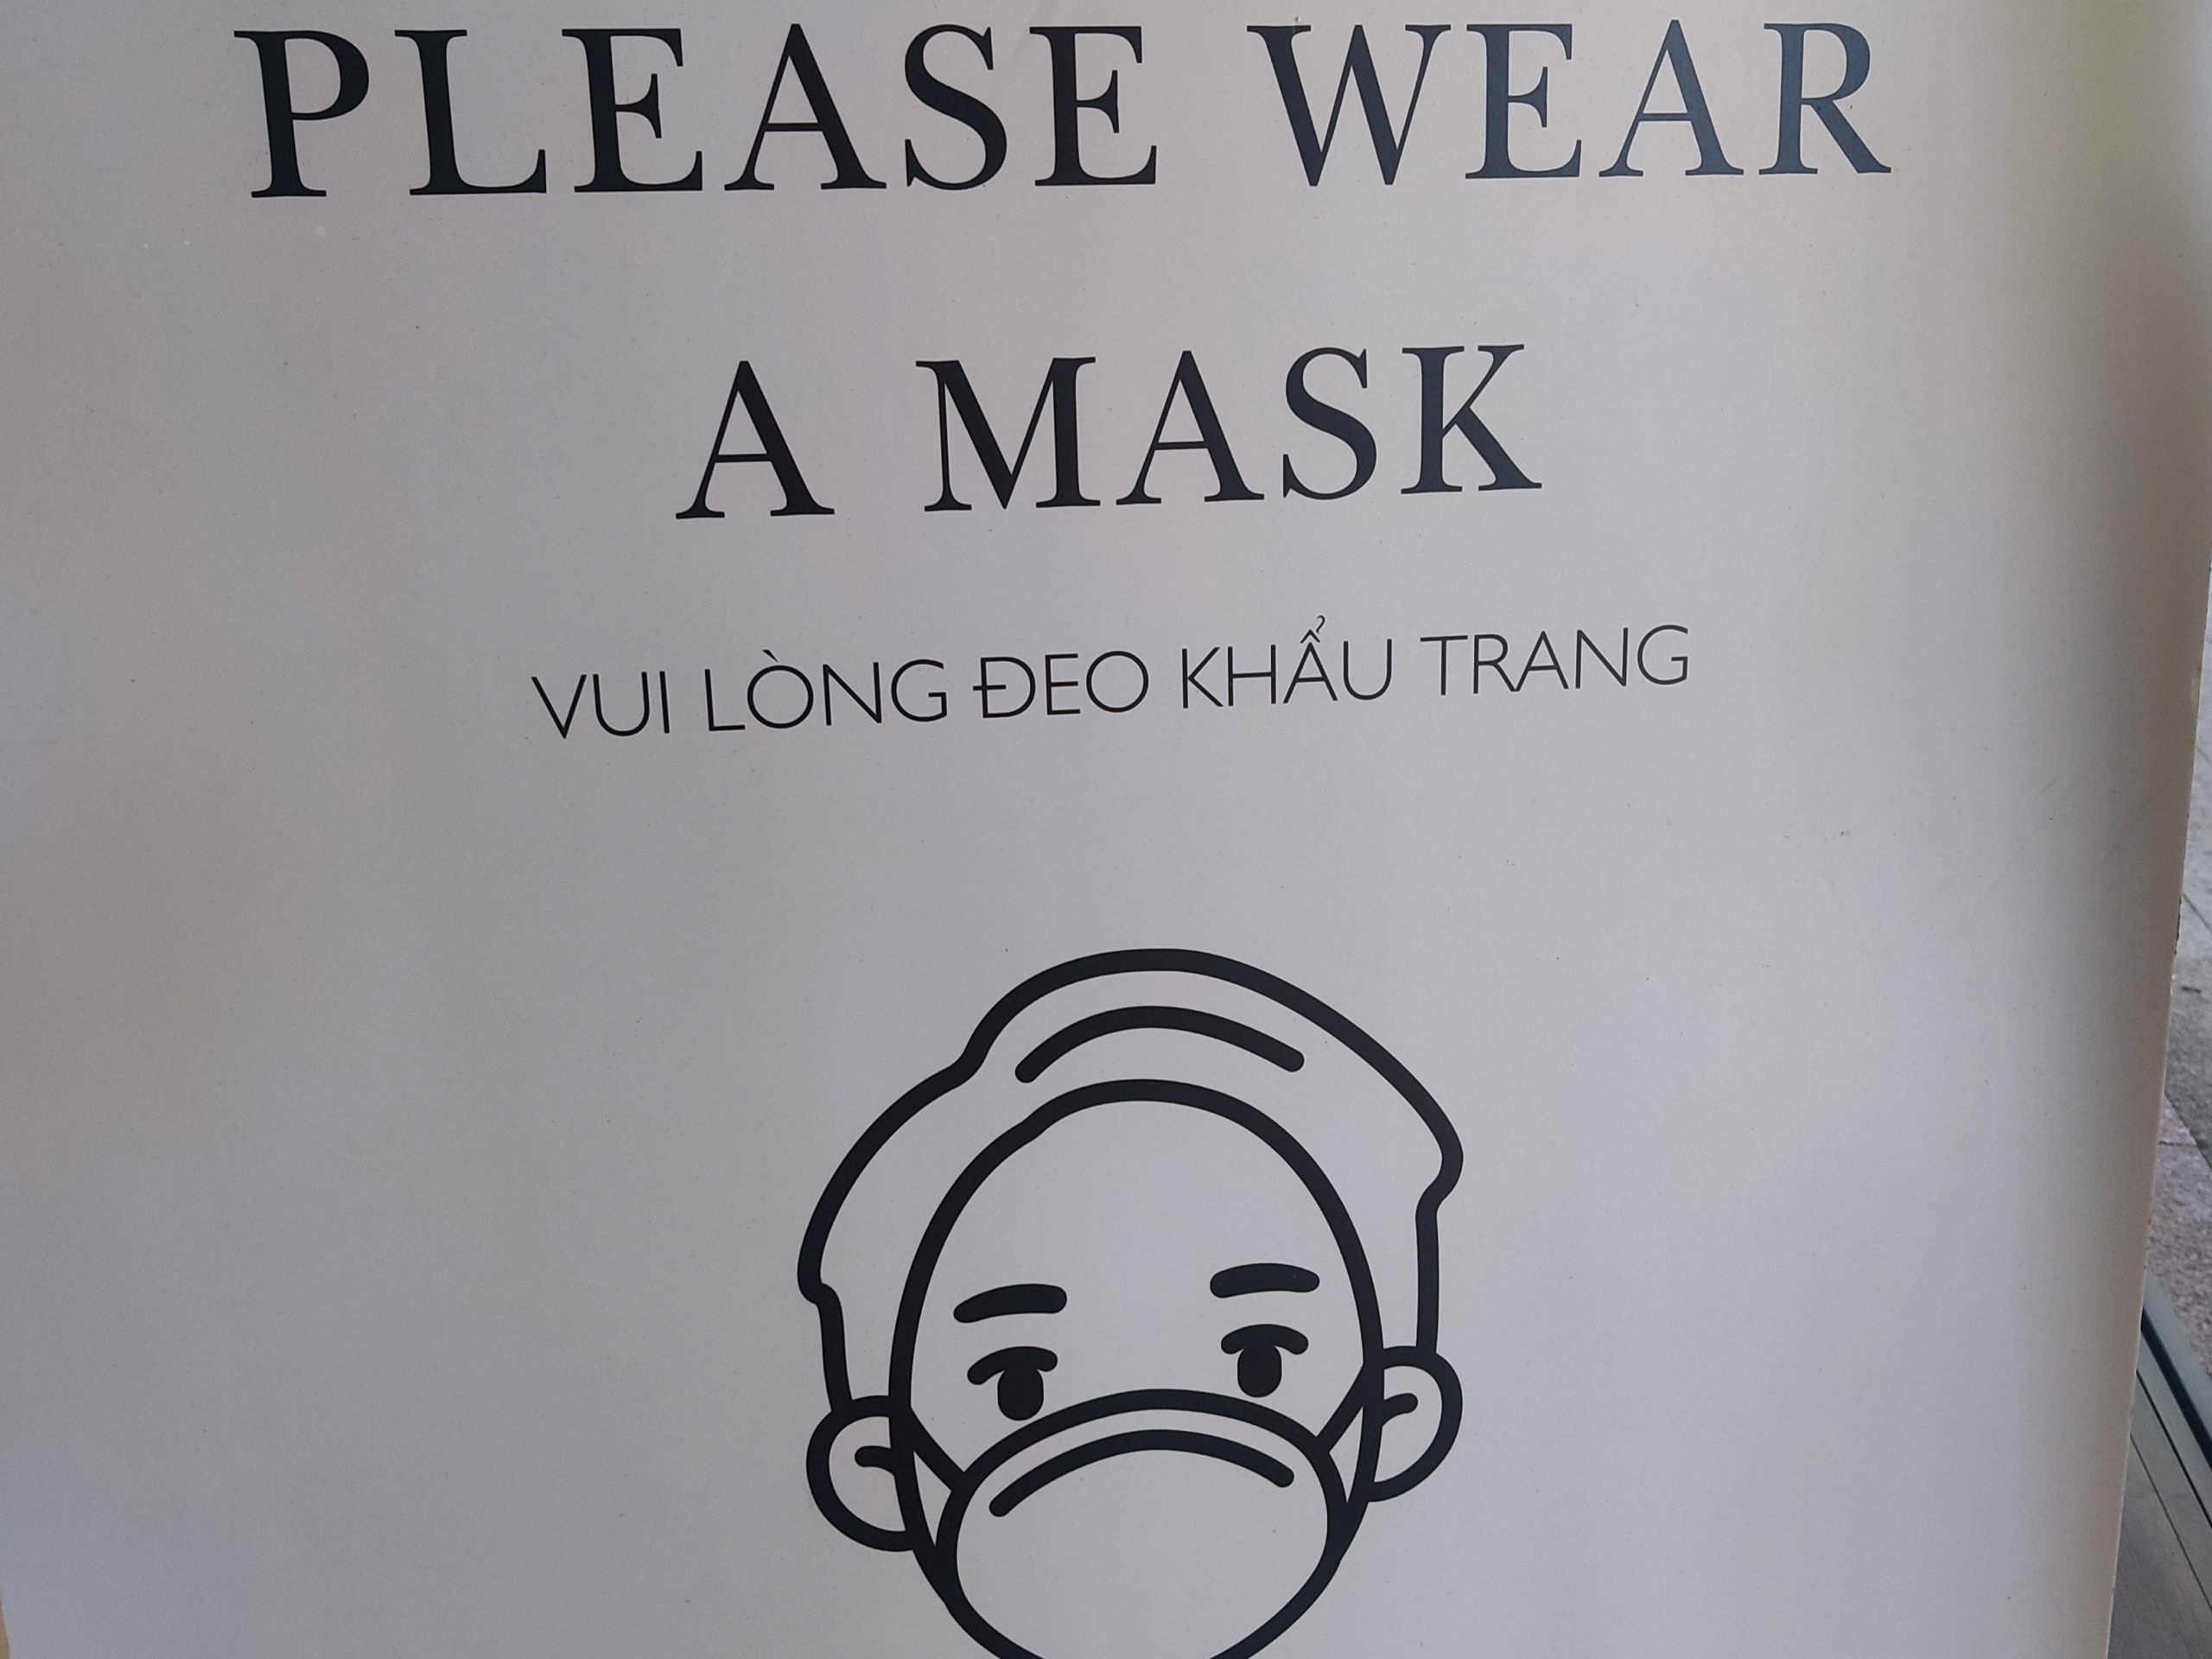 ベトナムのホテルではマスク必要不要はホテルによる